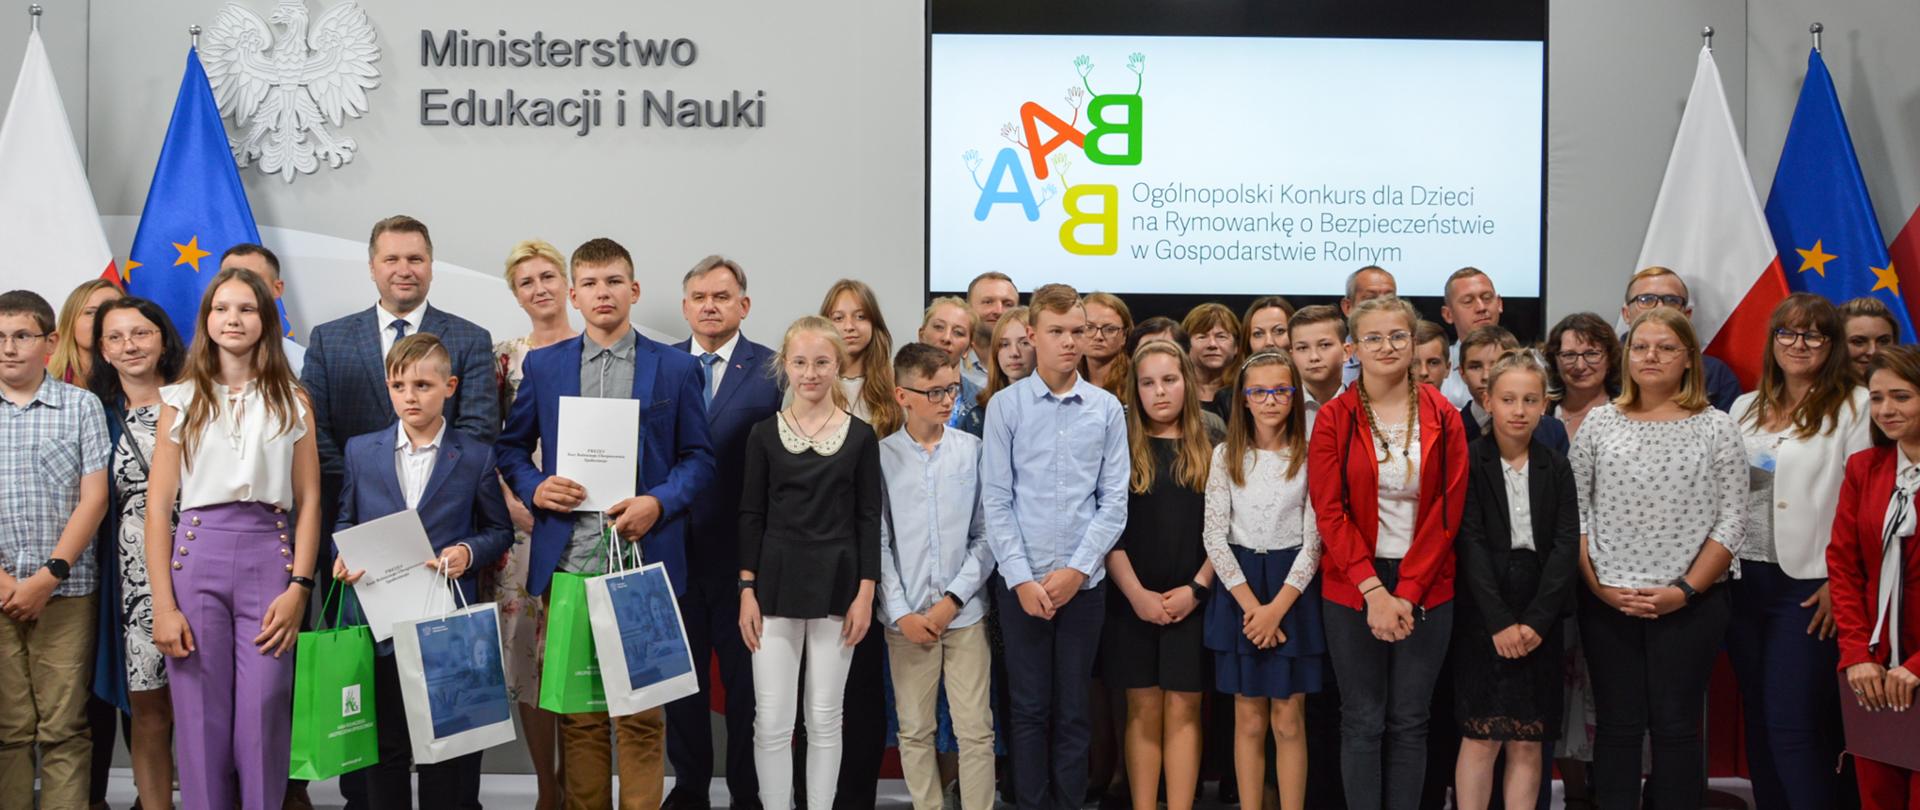 Zdjęcie z uroczystości podsumowania III Ogólnopolskiego Konkursu dla Dzieci na Rymowankę o Bezpieczeństwie w Gospodarstwie Rolnym